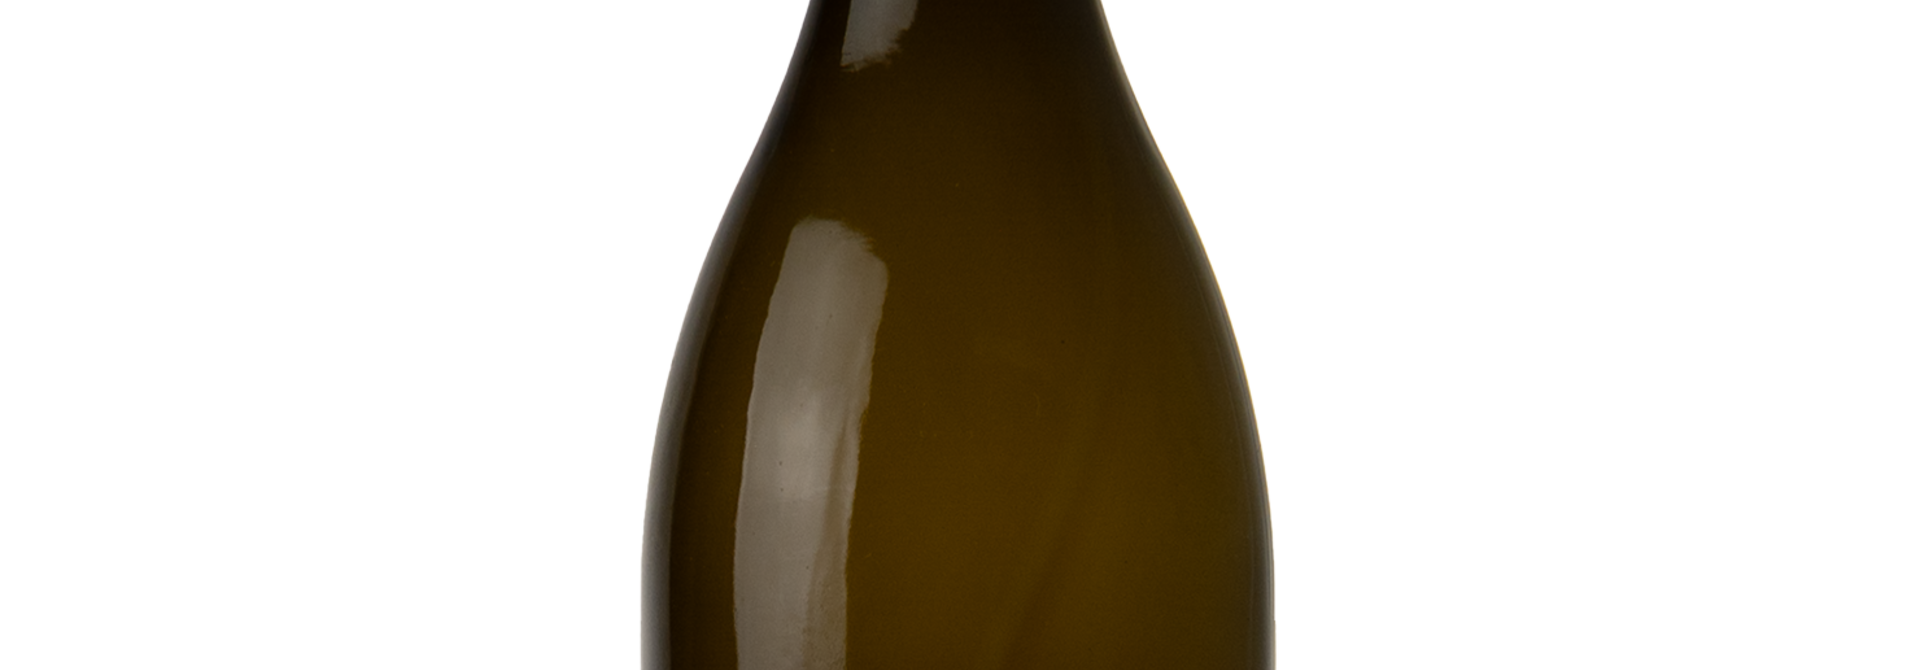 Bourgogne Cote d'Or Chardonnay domaine de la Choupette